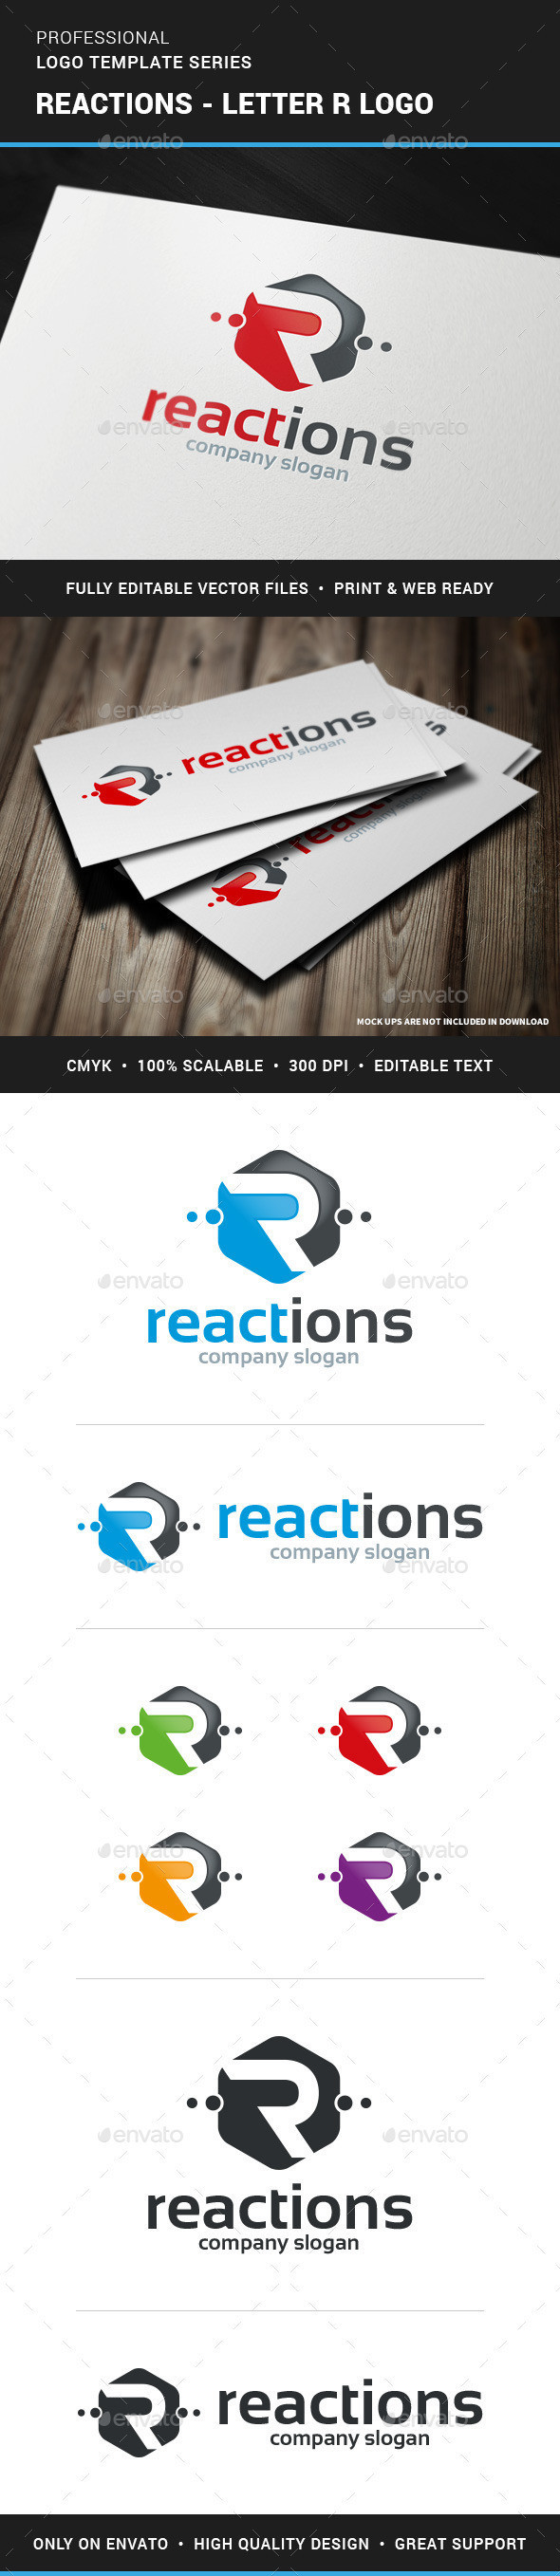 Reactions letter r logo